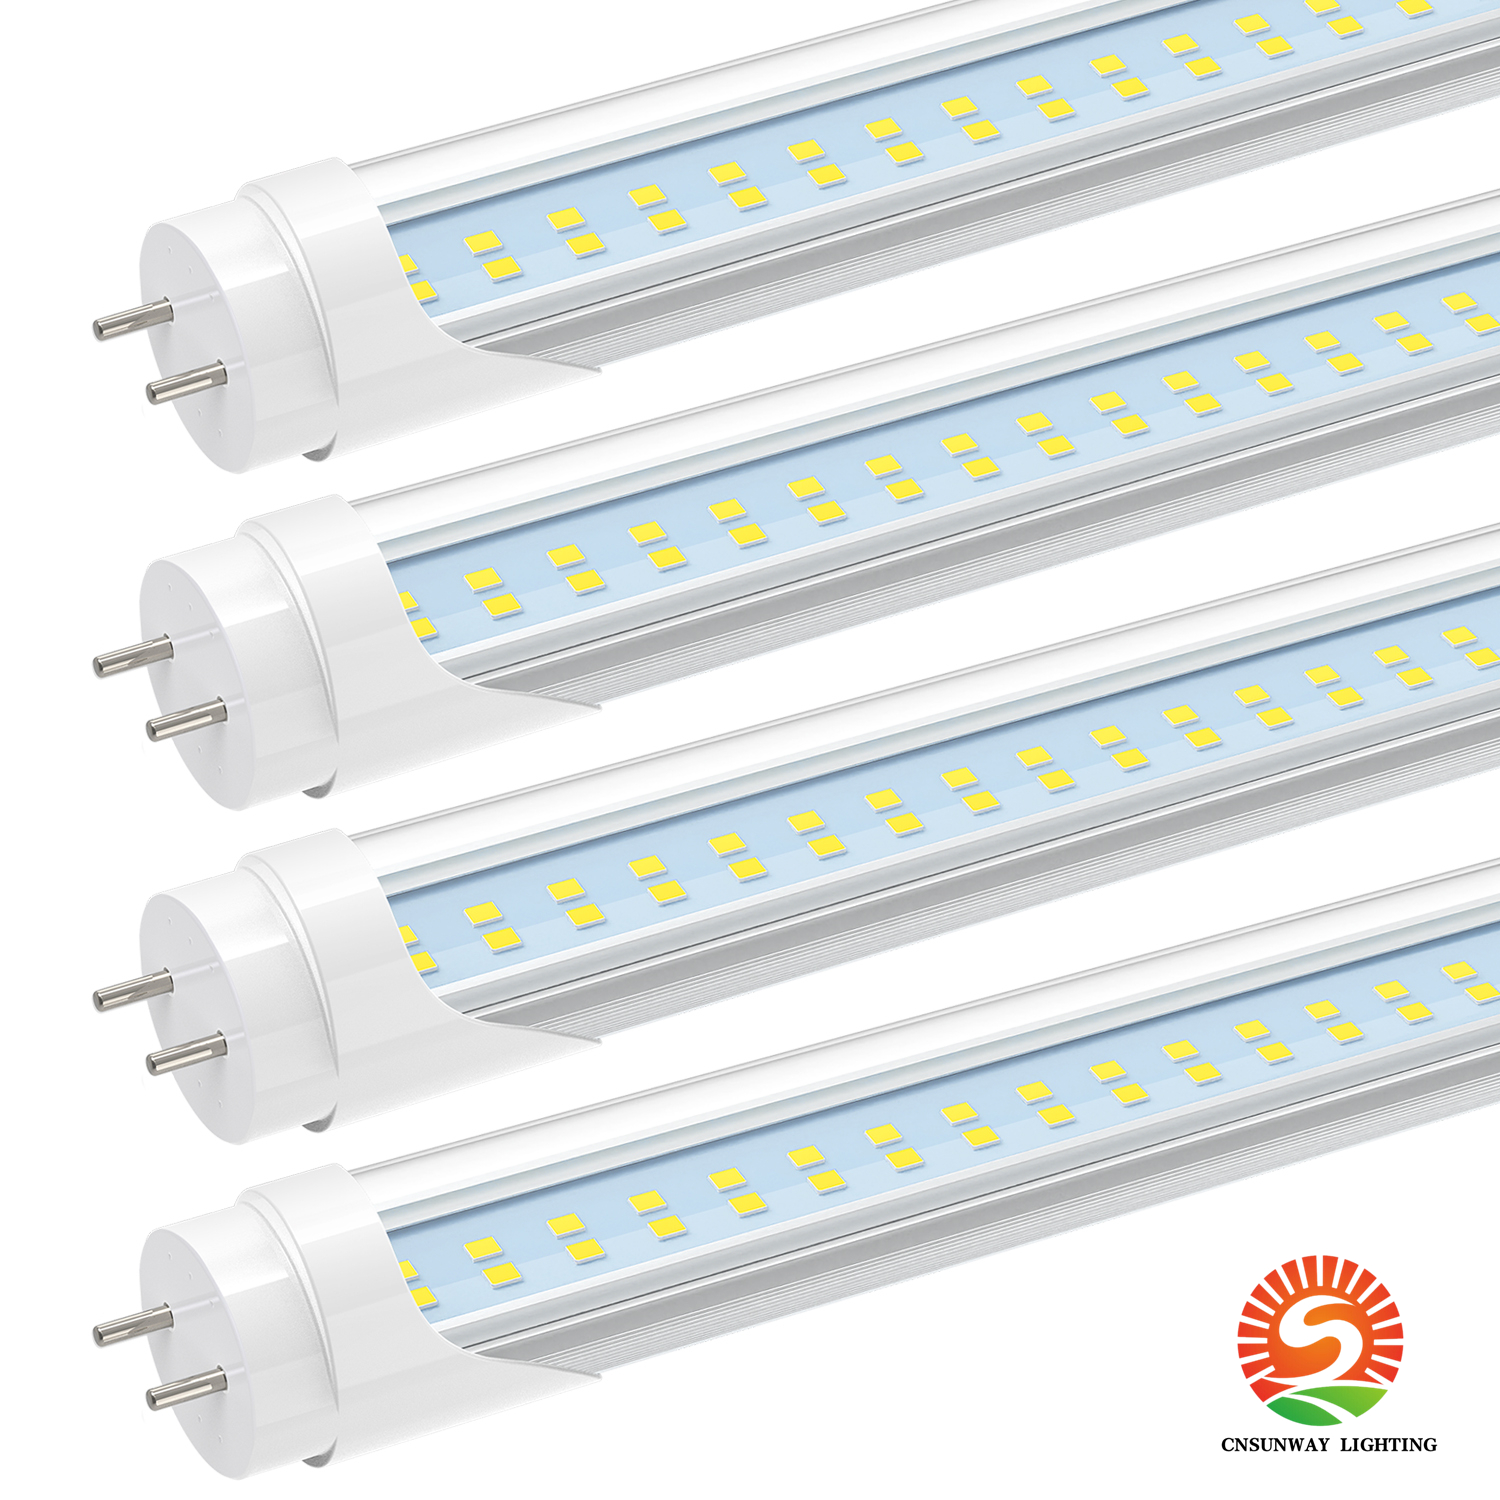 T8 LED Tipo B Luz de tubo 3 pés, 2520lm, 18W (45W equivalente), 6000k, 36 polegadas F30T12 Substituição de lâmpada fluorescente, potência de extremidade dupla, ETL listada, Remova a luminária de lastro